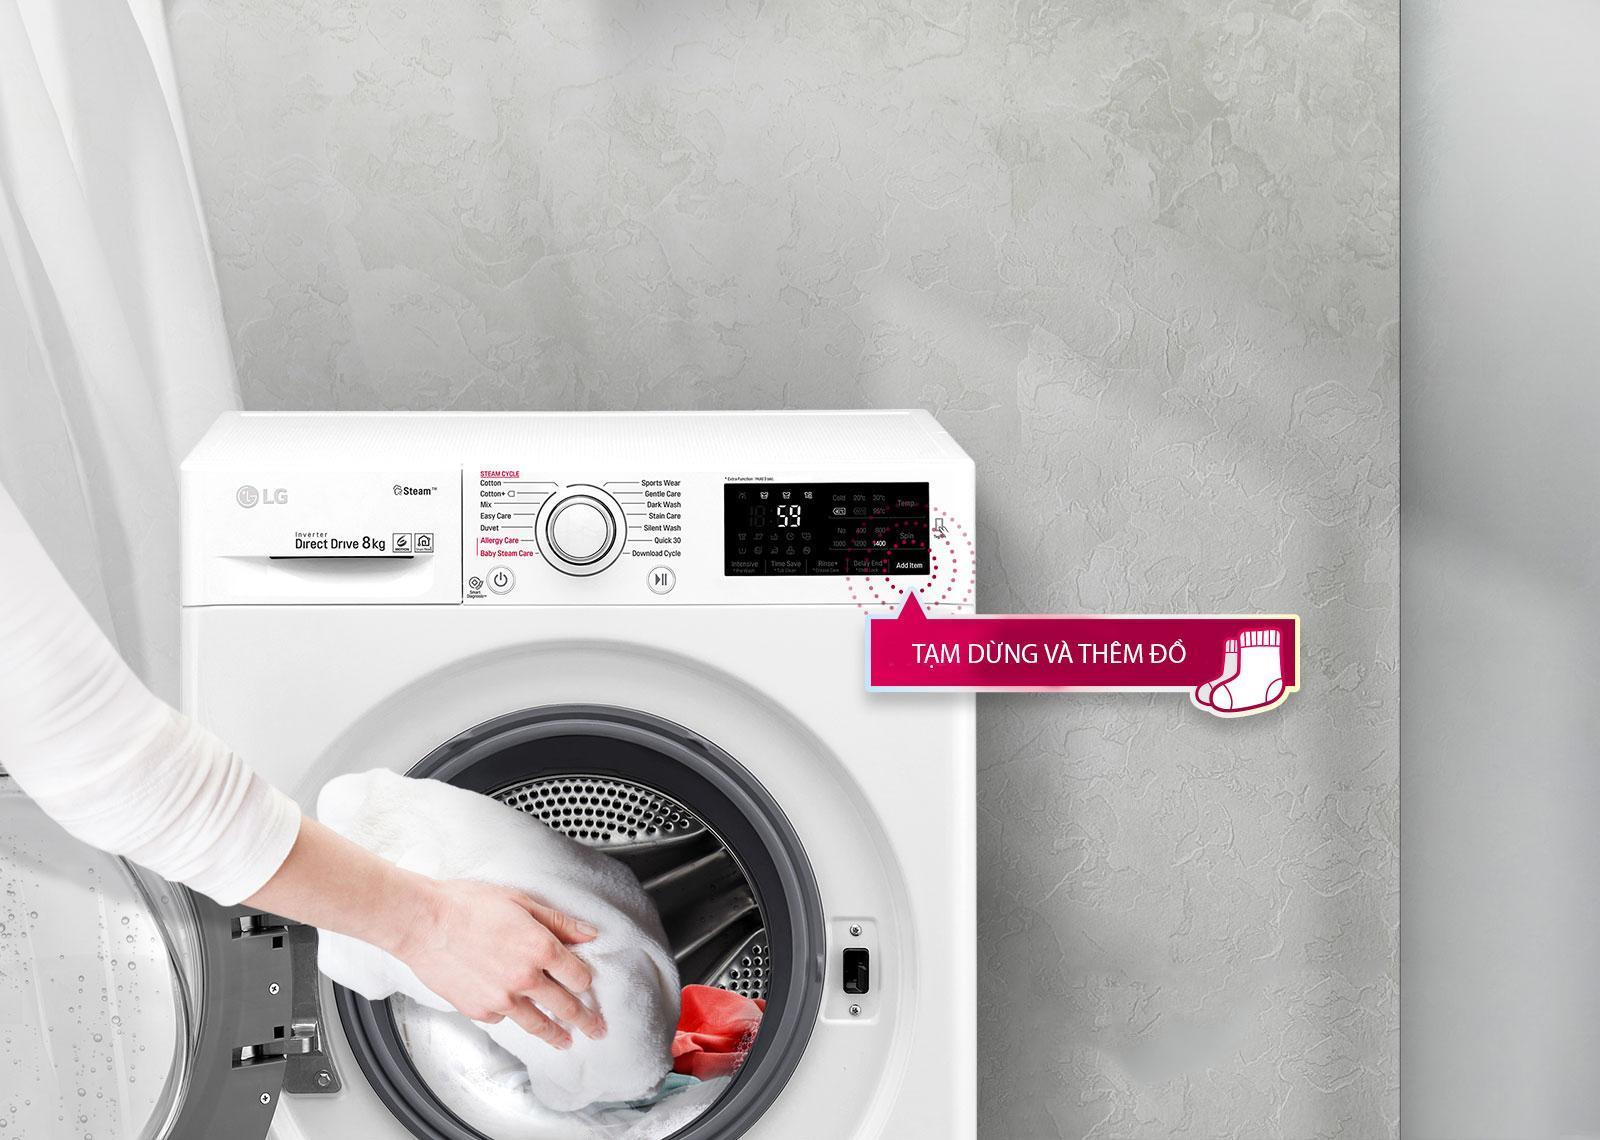 Bạn có thể tạm dừng và thêm đồ vào với máy giặt LG FC1408S4W2 